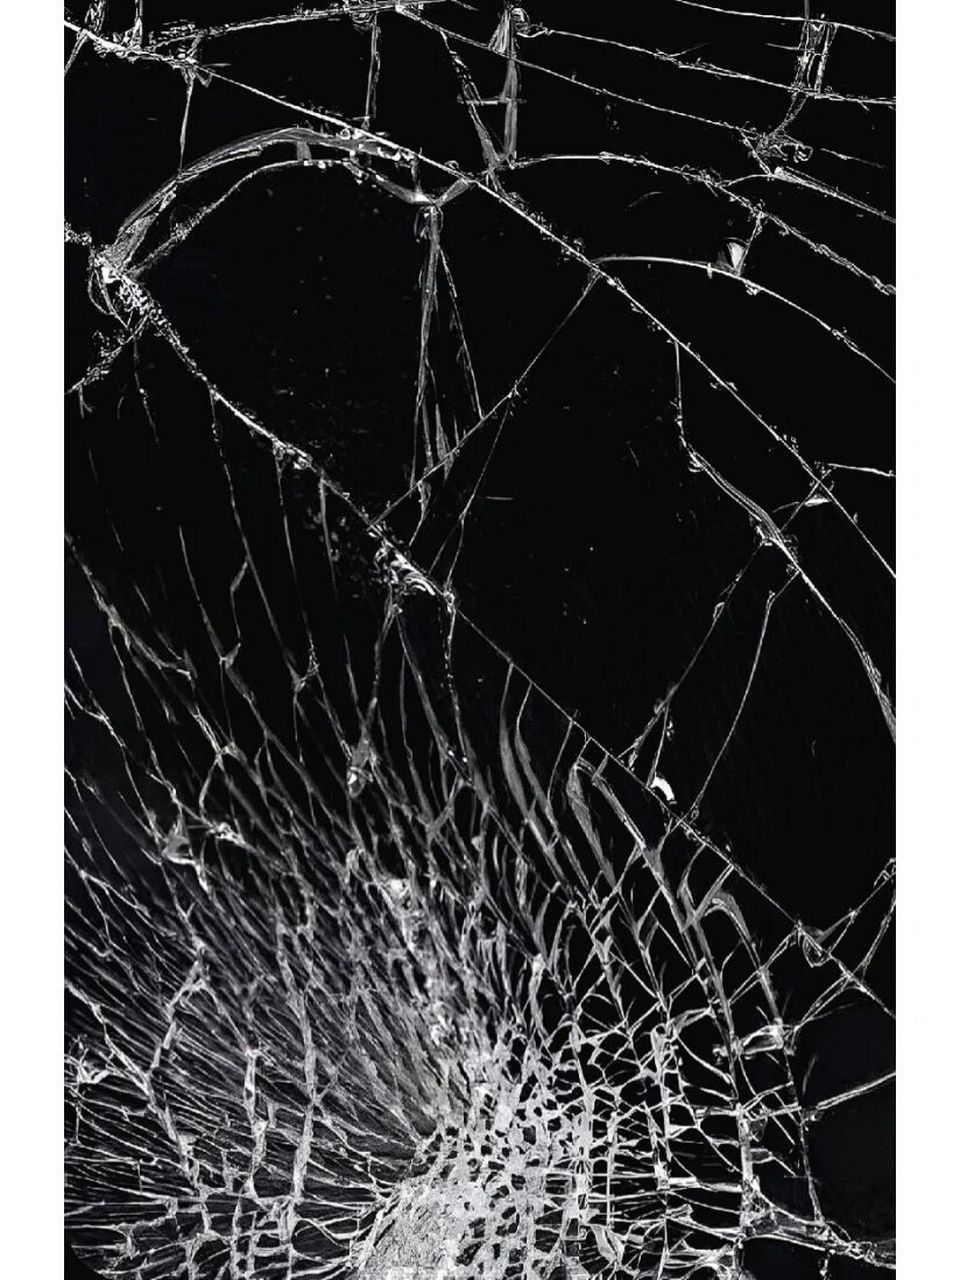 手机屏幕碎了专用壁纸图片